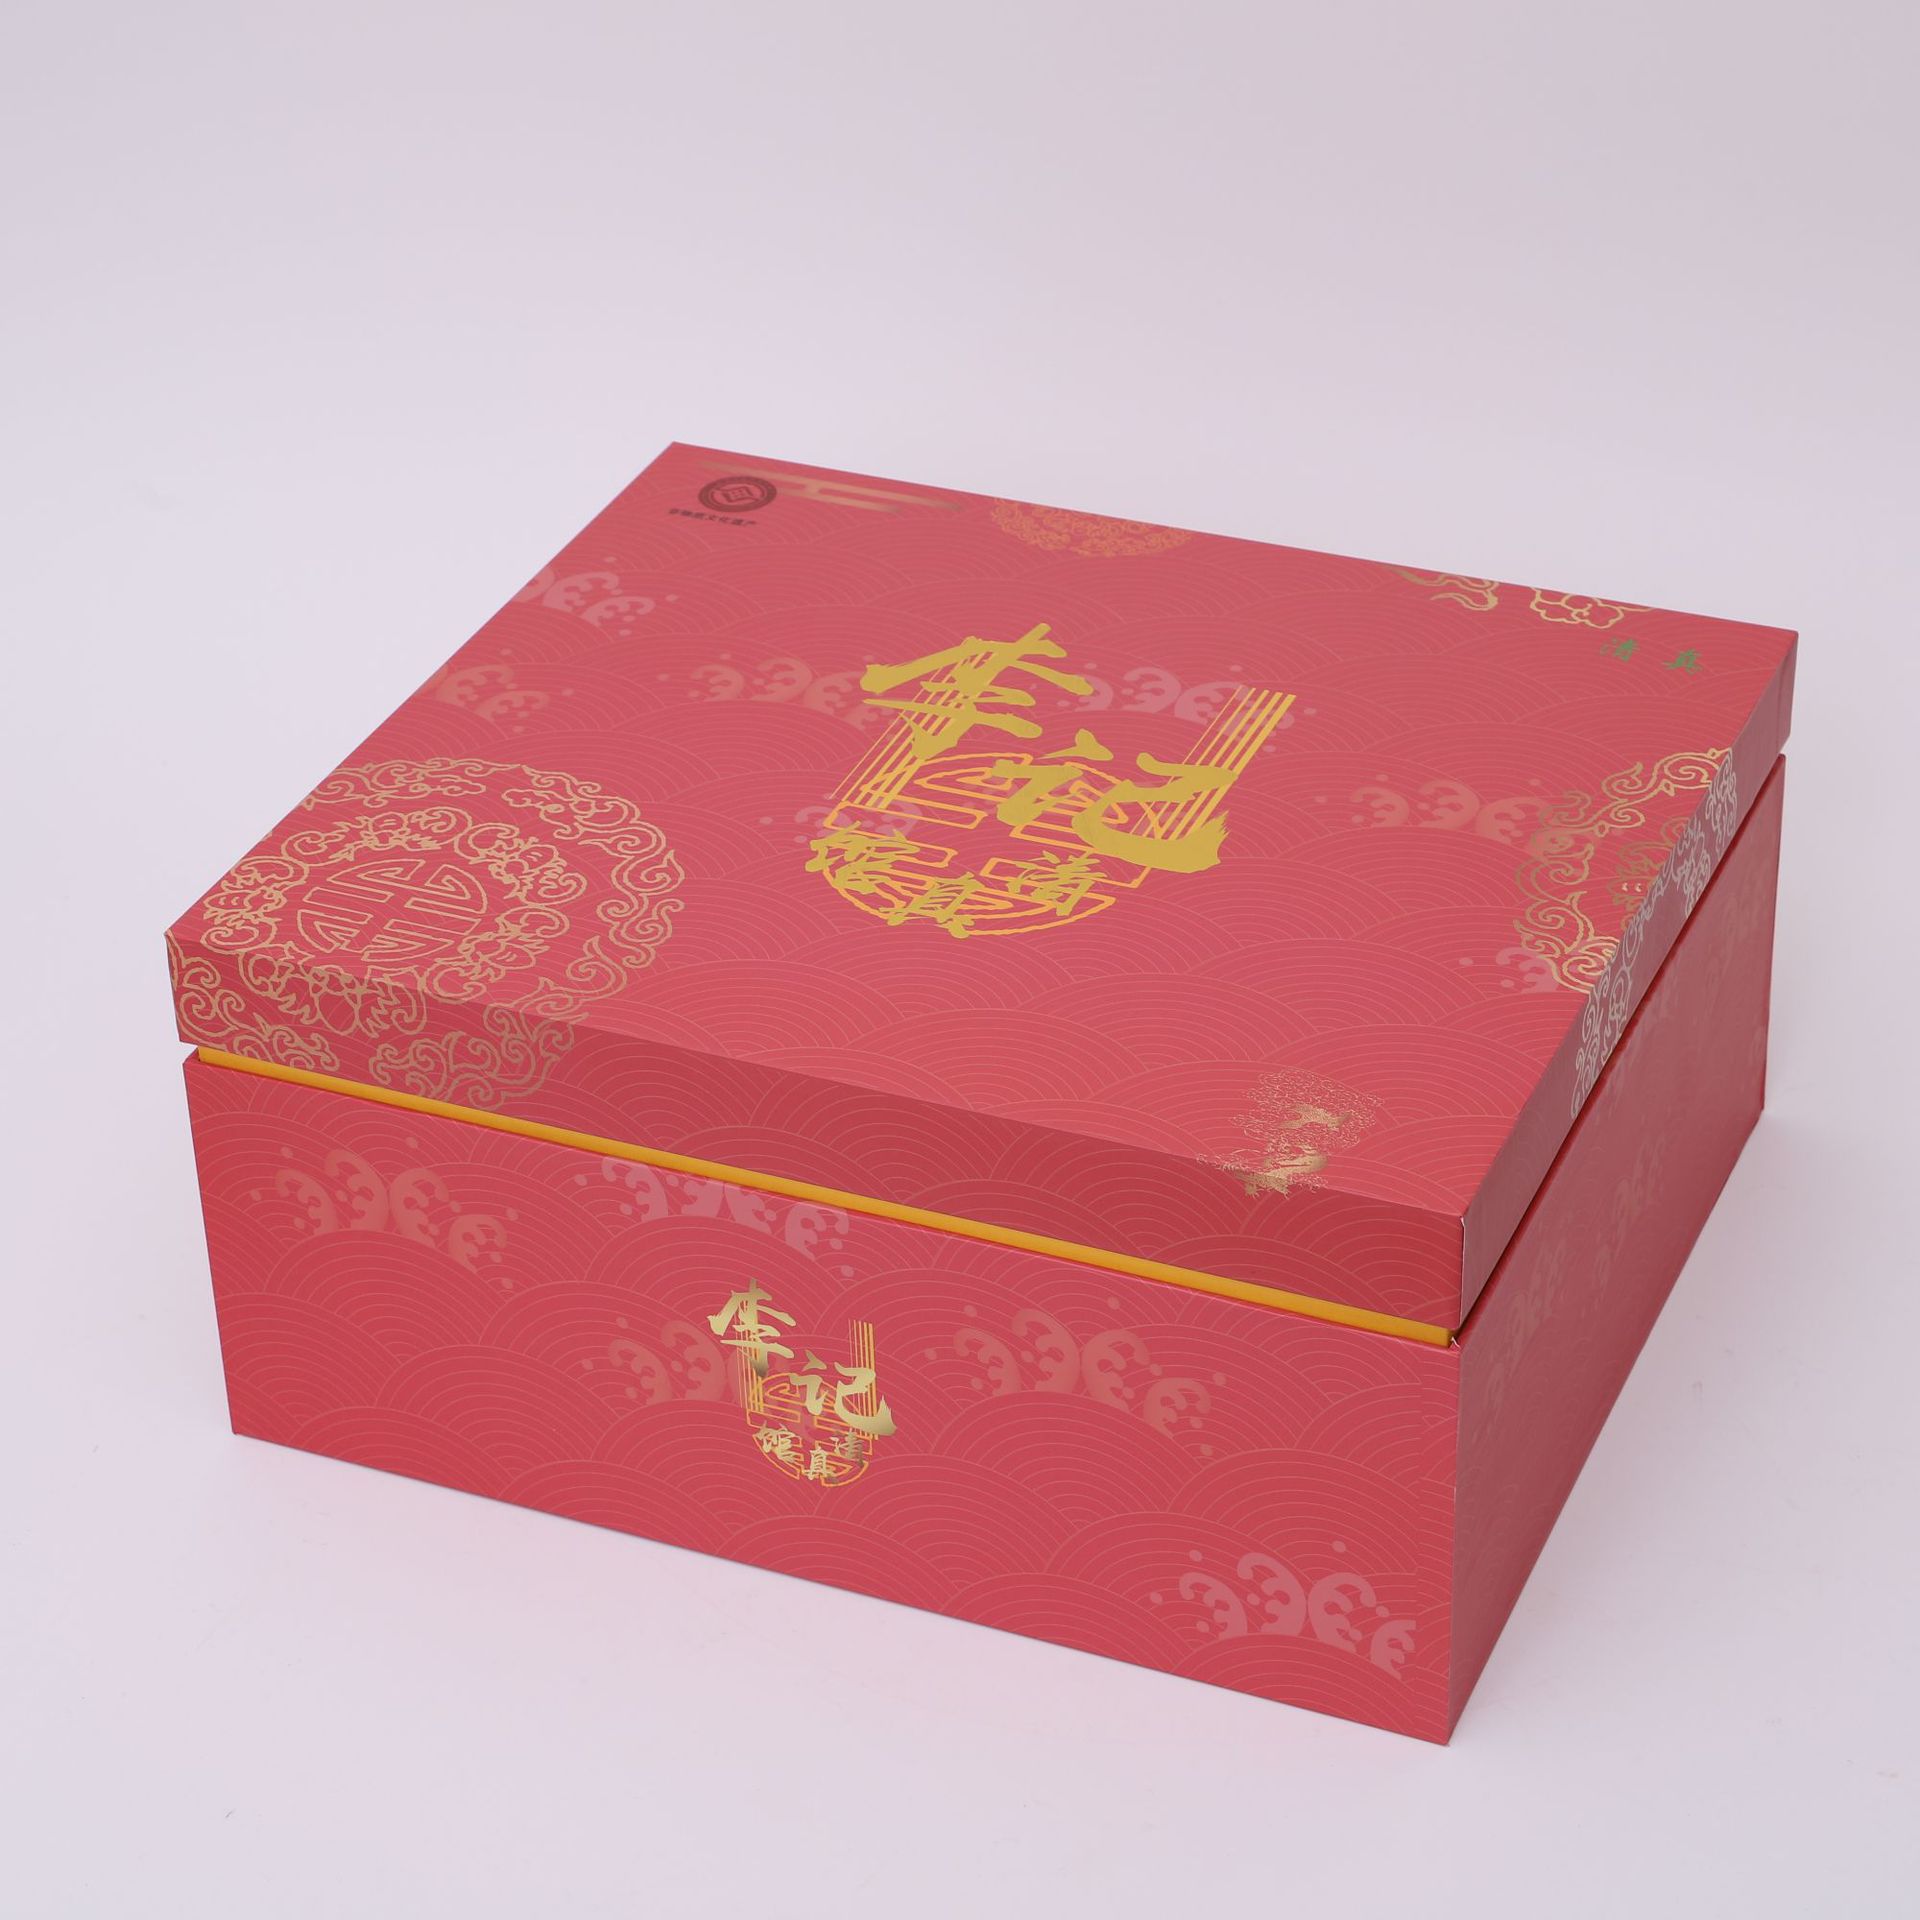 盒包装包装印刷_郑州大家印纸抽盒印刷_郑州纸抽盒印刷